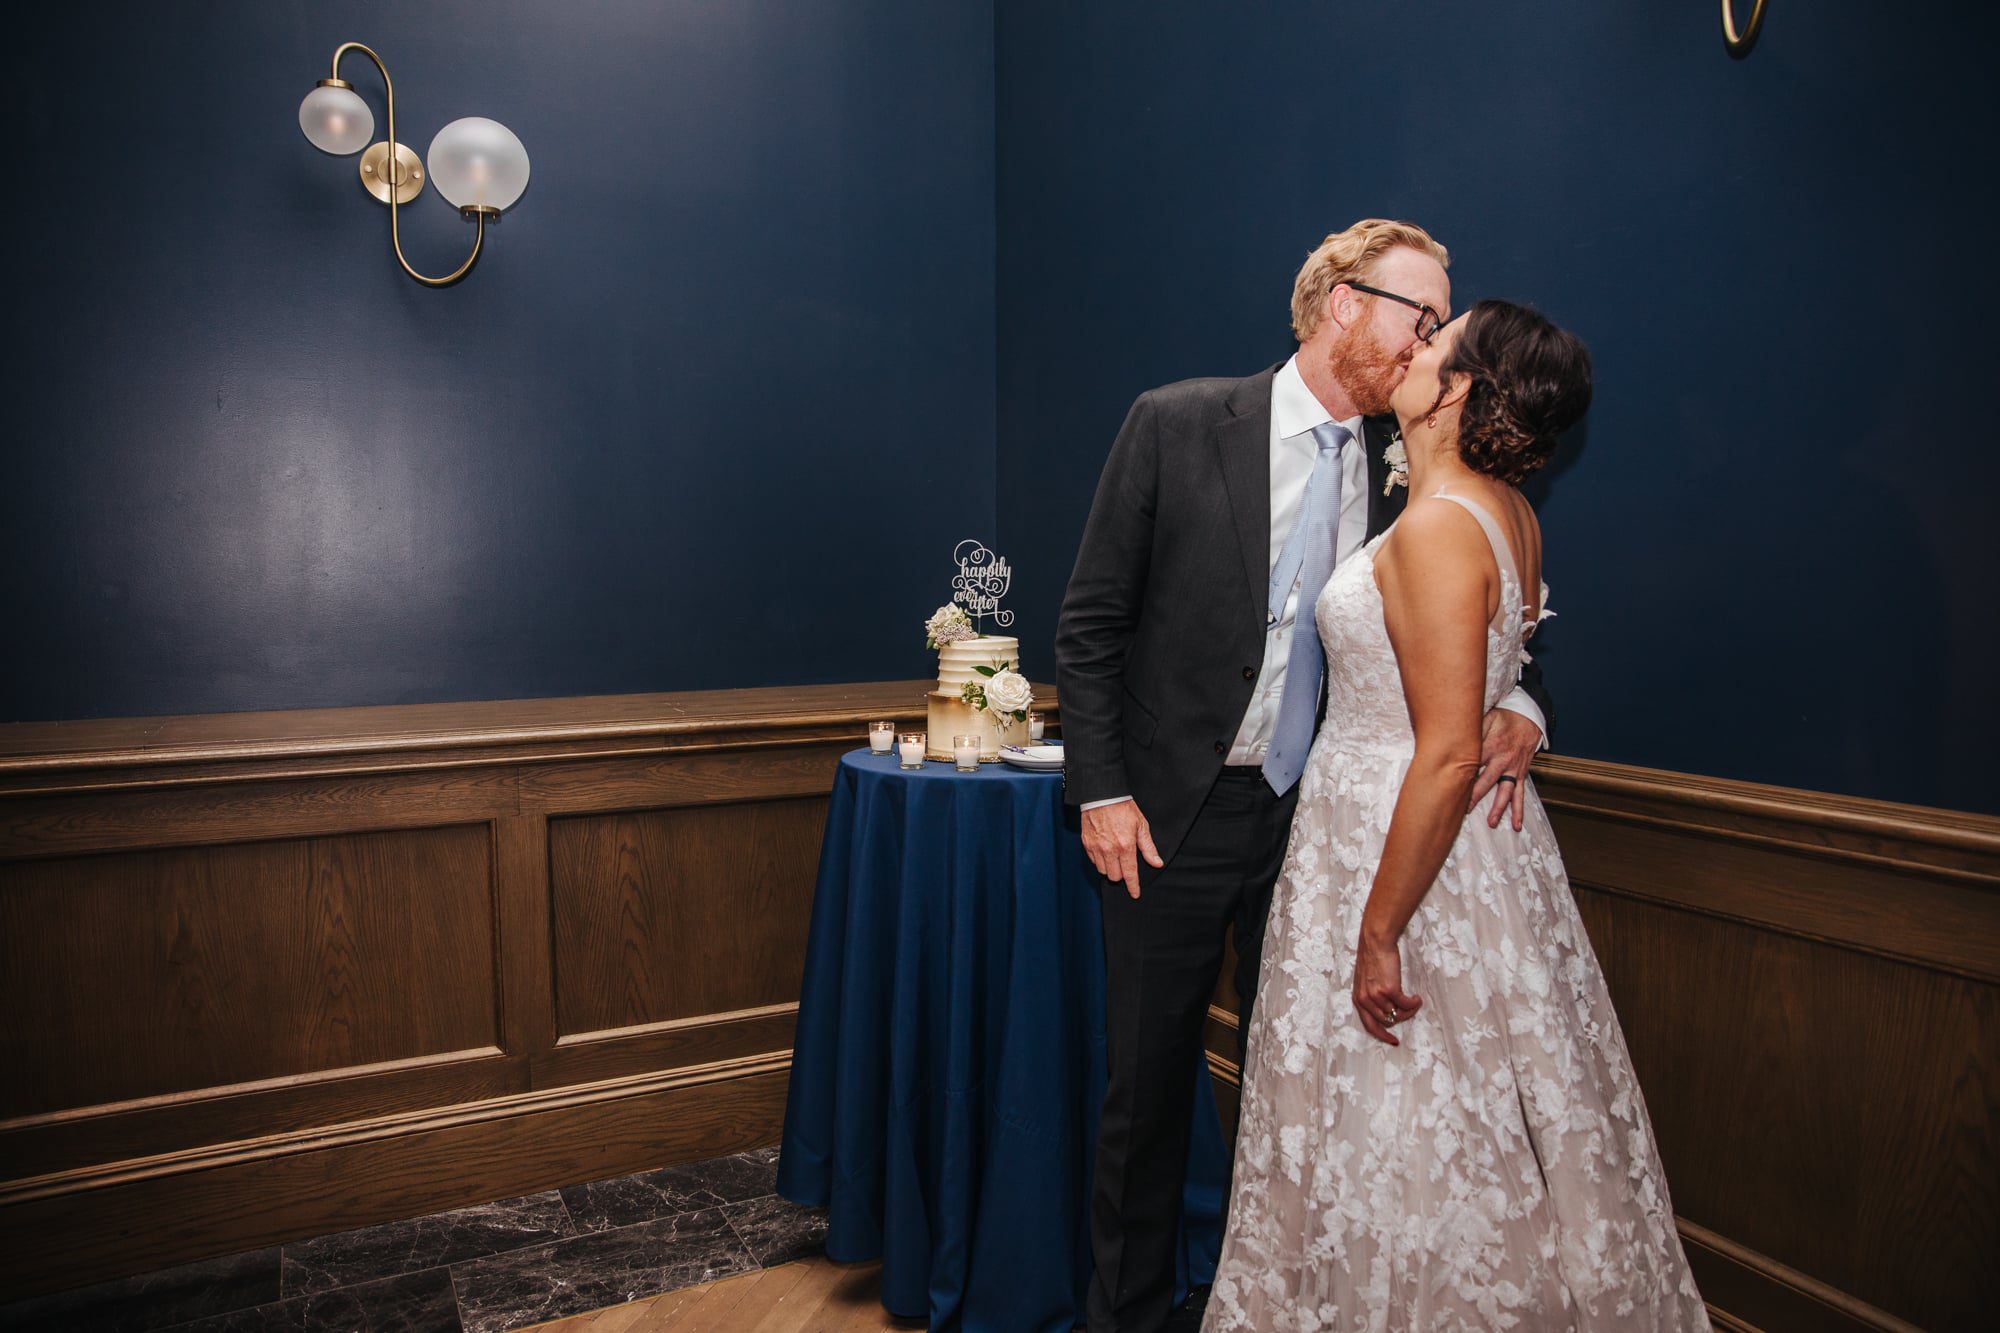 bride and groom kiss, modern wedding venue, cake cutting, wedding reception